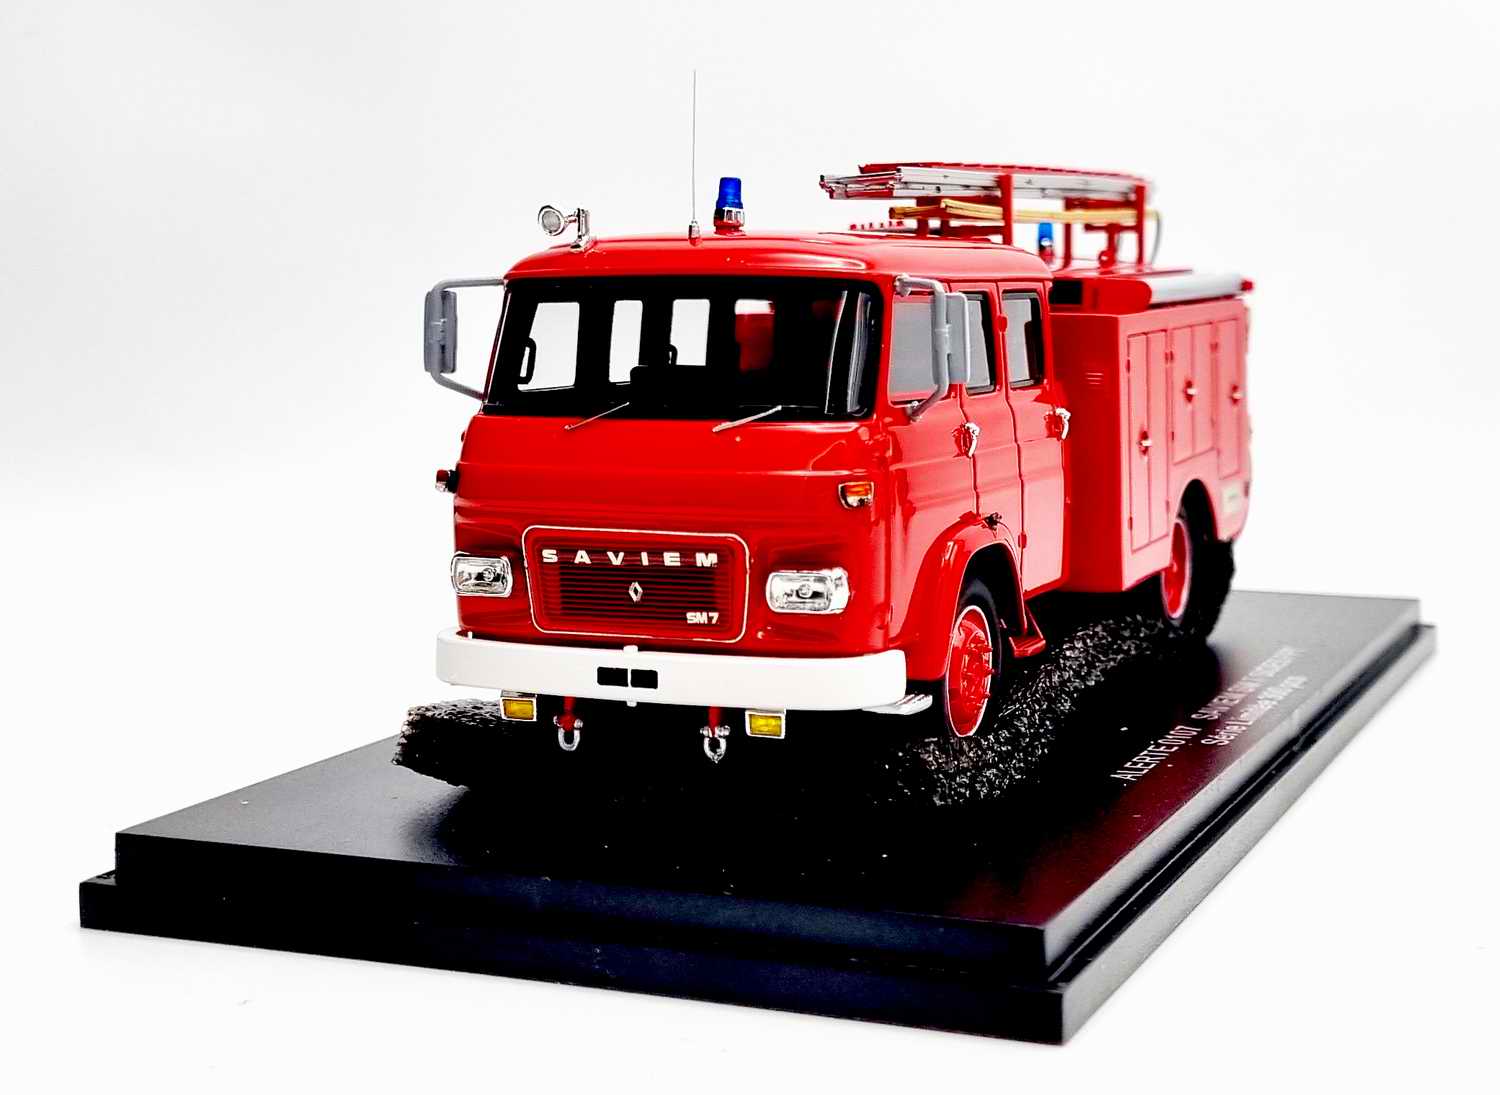 Miniature Camion de Sapeurs Pompiers SAVIEM SM7 SIDES FPT 1/43 Alerte